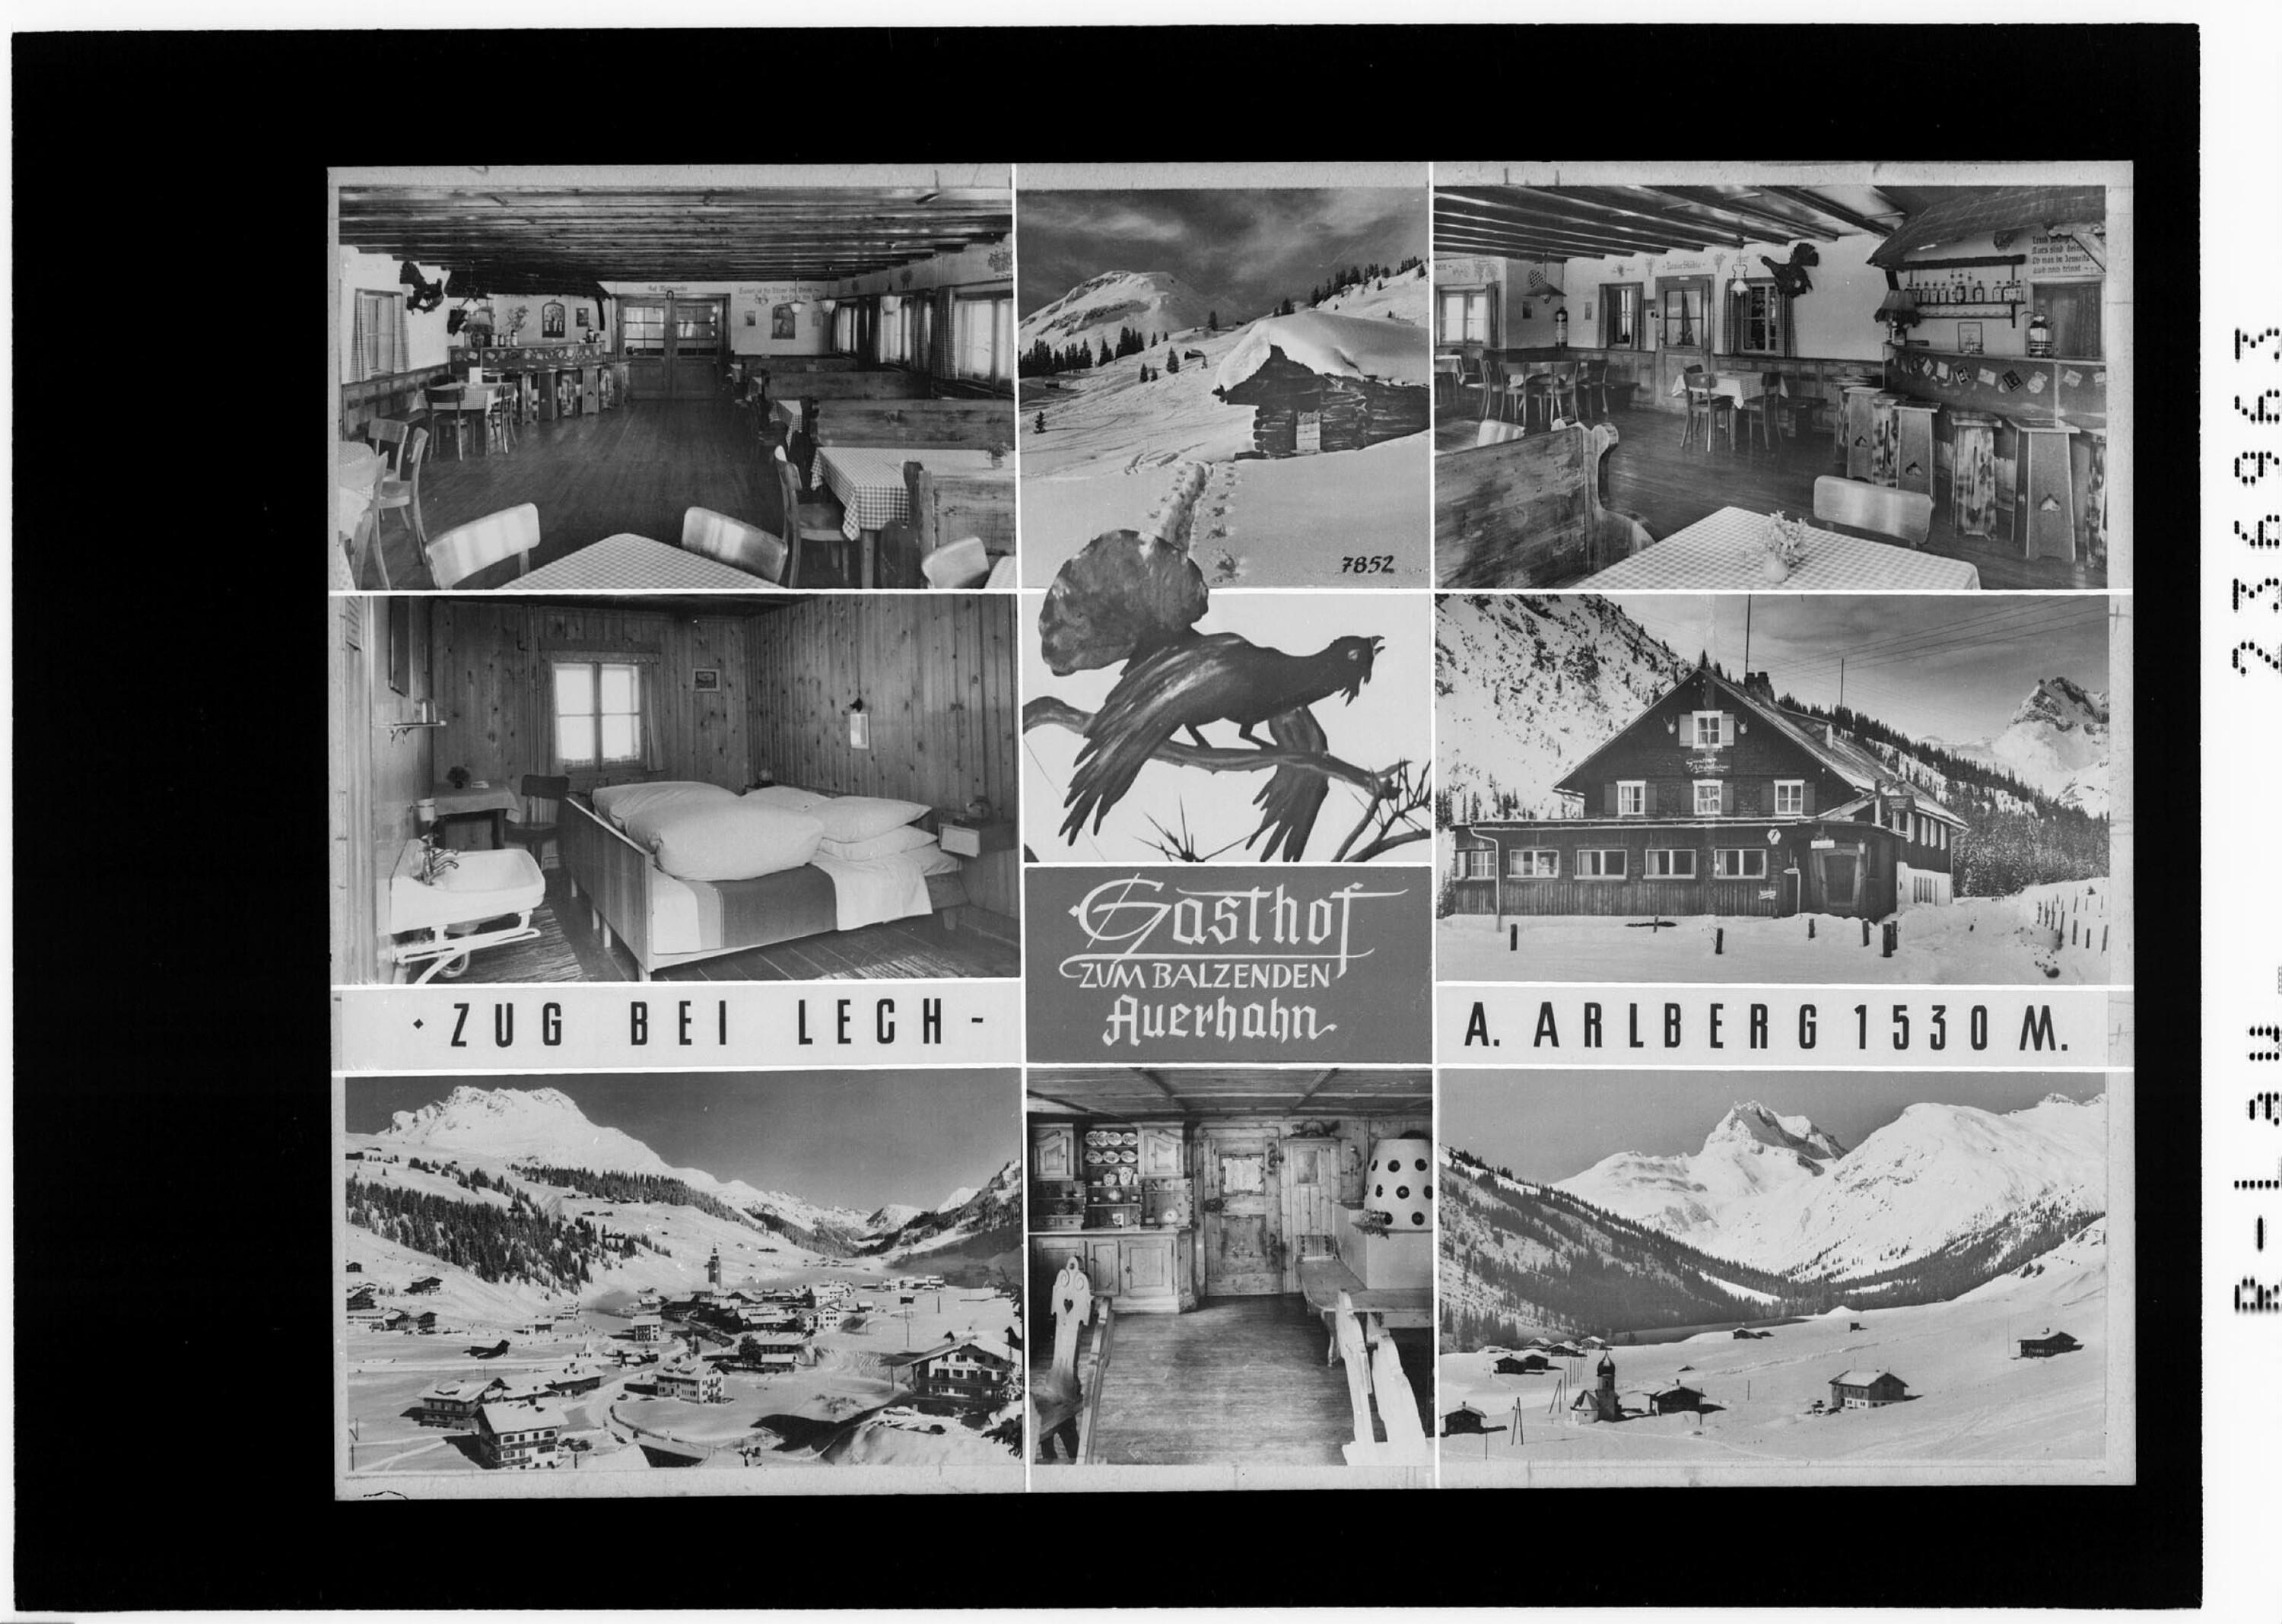 Gasthof zum Balzenden Auerhahn / Zug bei Lech am Arlberg 1530 m></div>


    <hr>
    <div class=